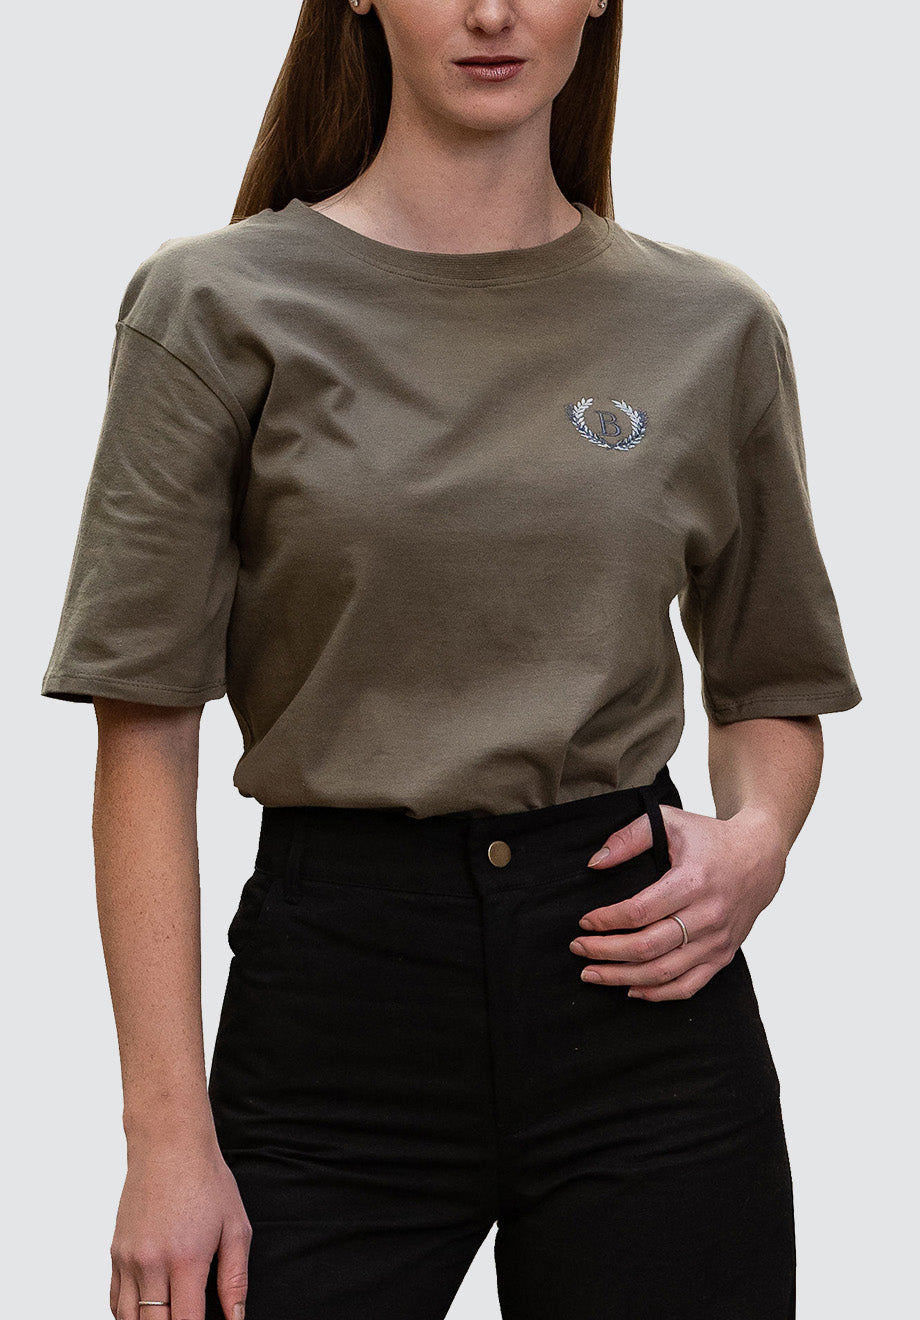 BELHAUZEN T-Shirt | Olive